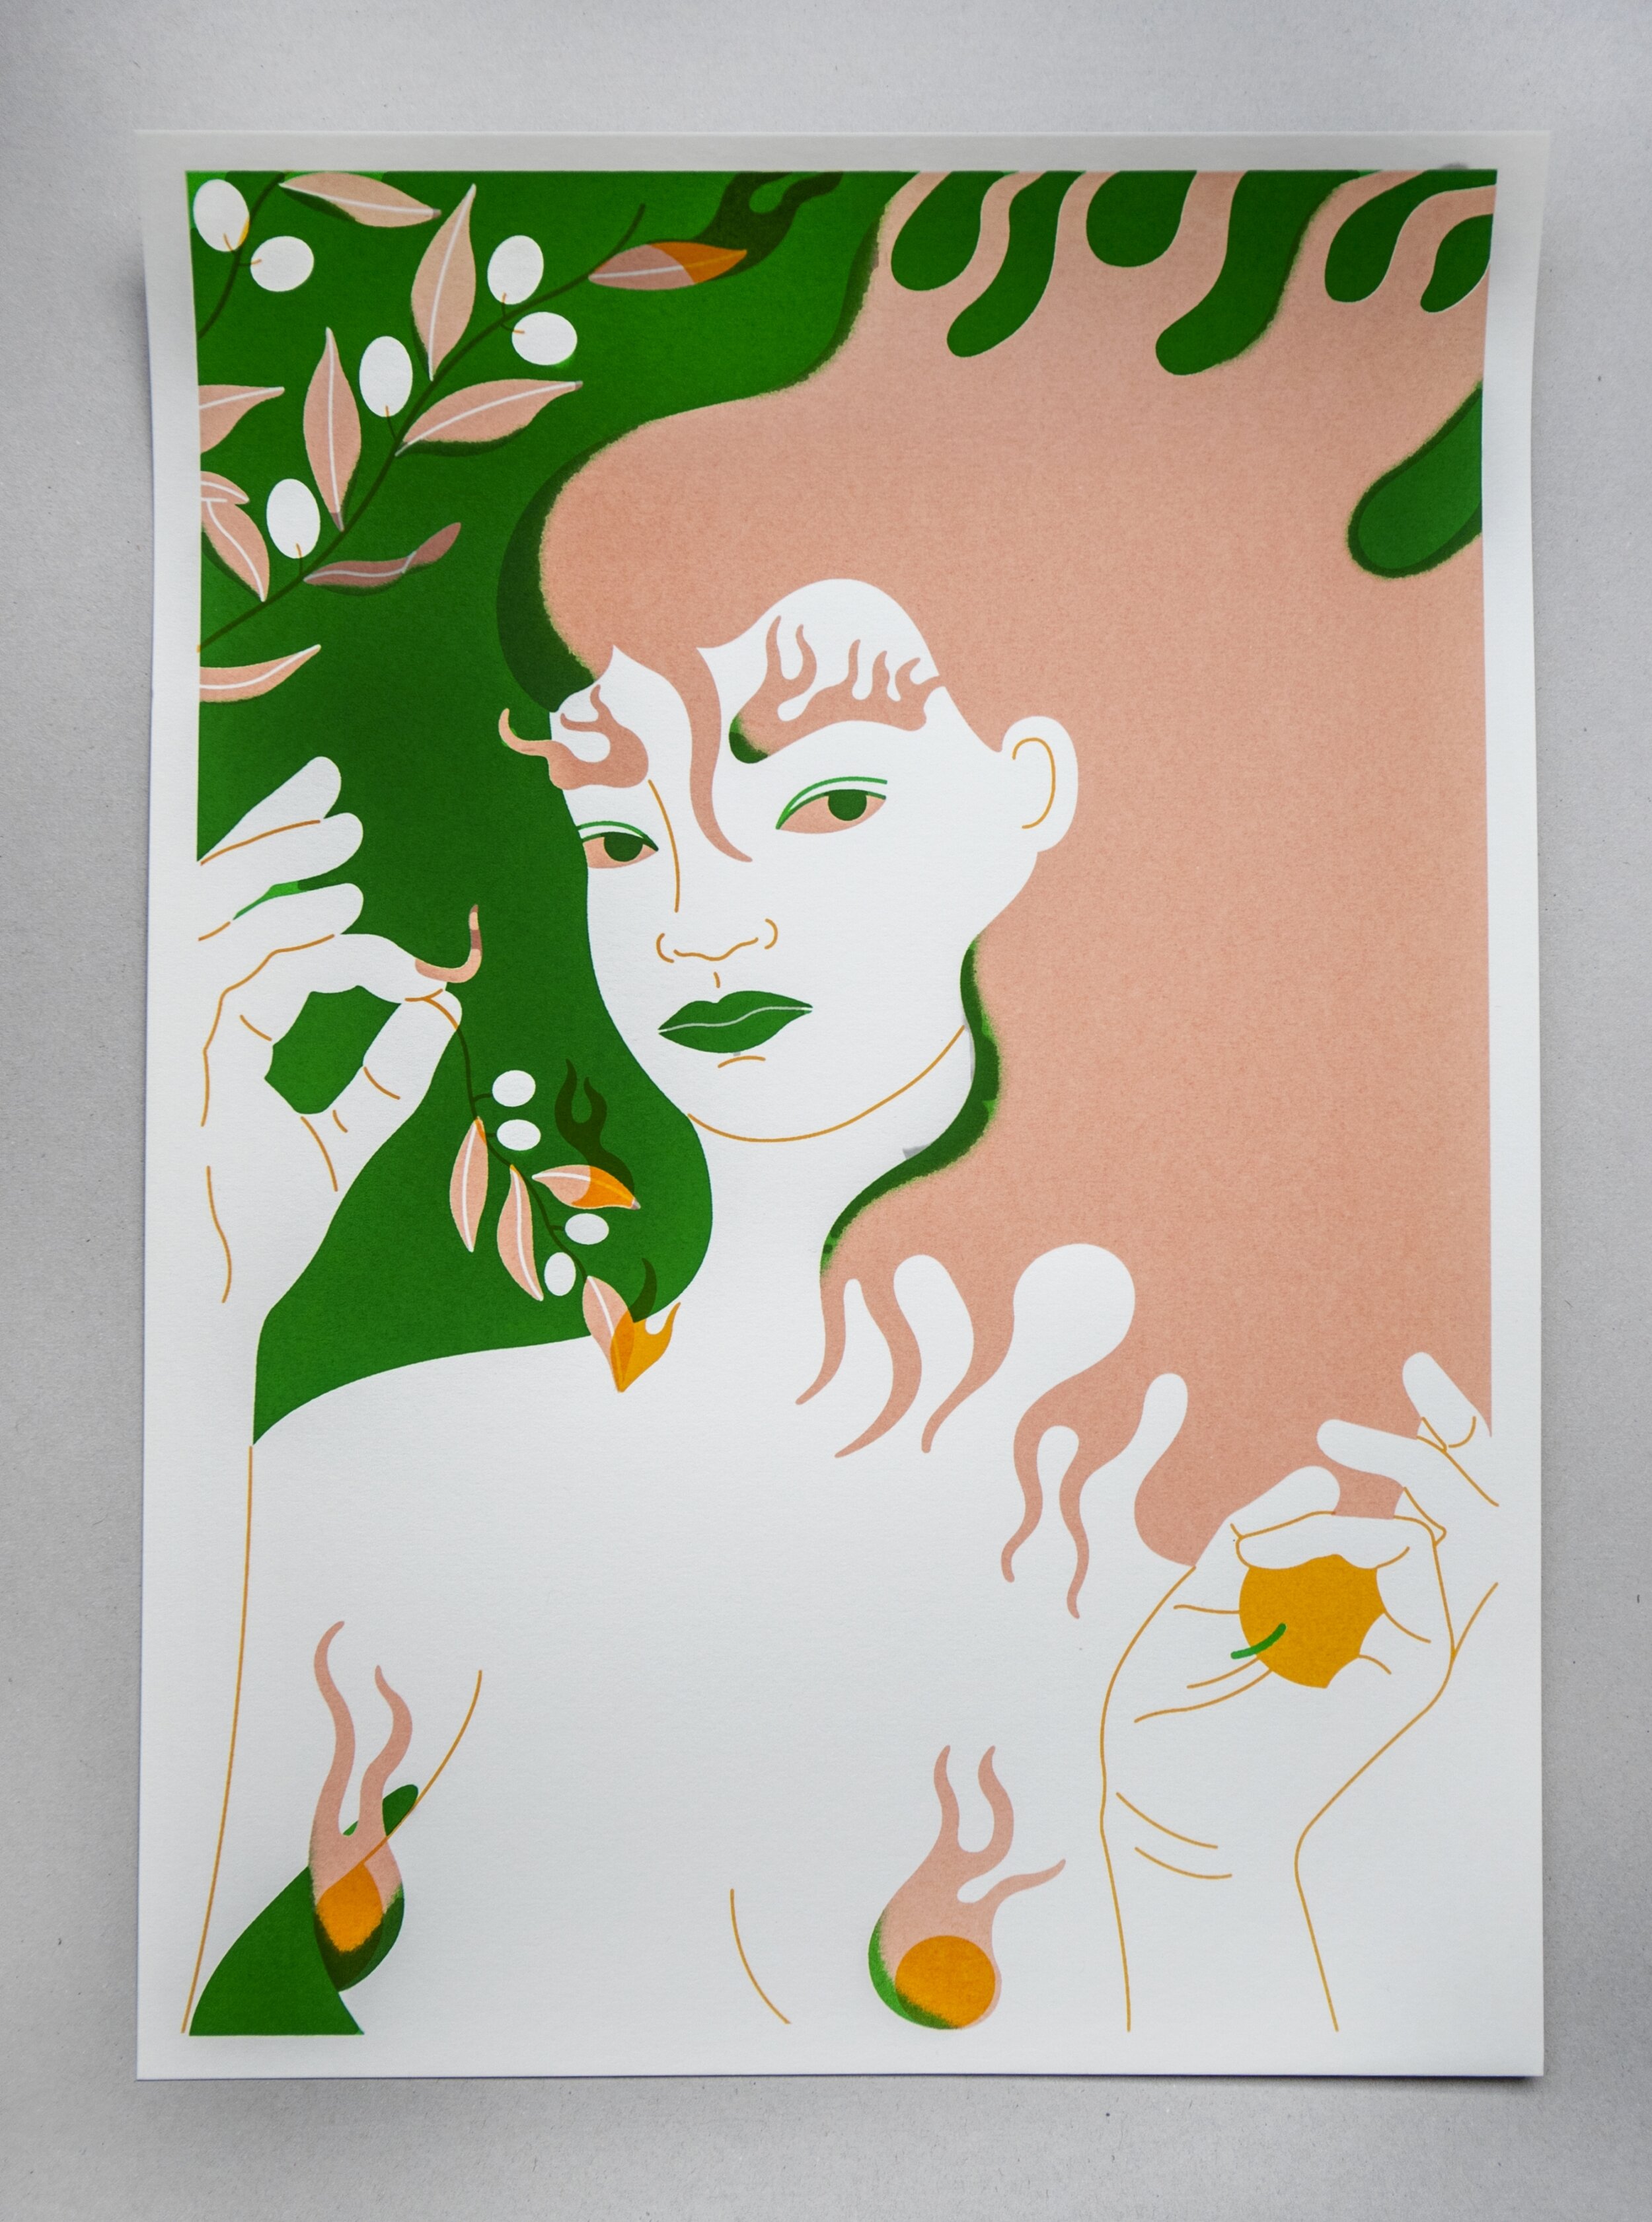  Een zeefdruk van Asa Ariyoshi. In groen, zalm, geel en wit is een gestileerde vrouw afgebeeld die de kijker aankijkt, met vlammend haar, wenkbrauwen en tepels. Ze houd een olijftak vast en linksboven op de achtergrond staan meer olijftakken. 